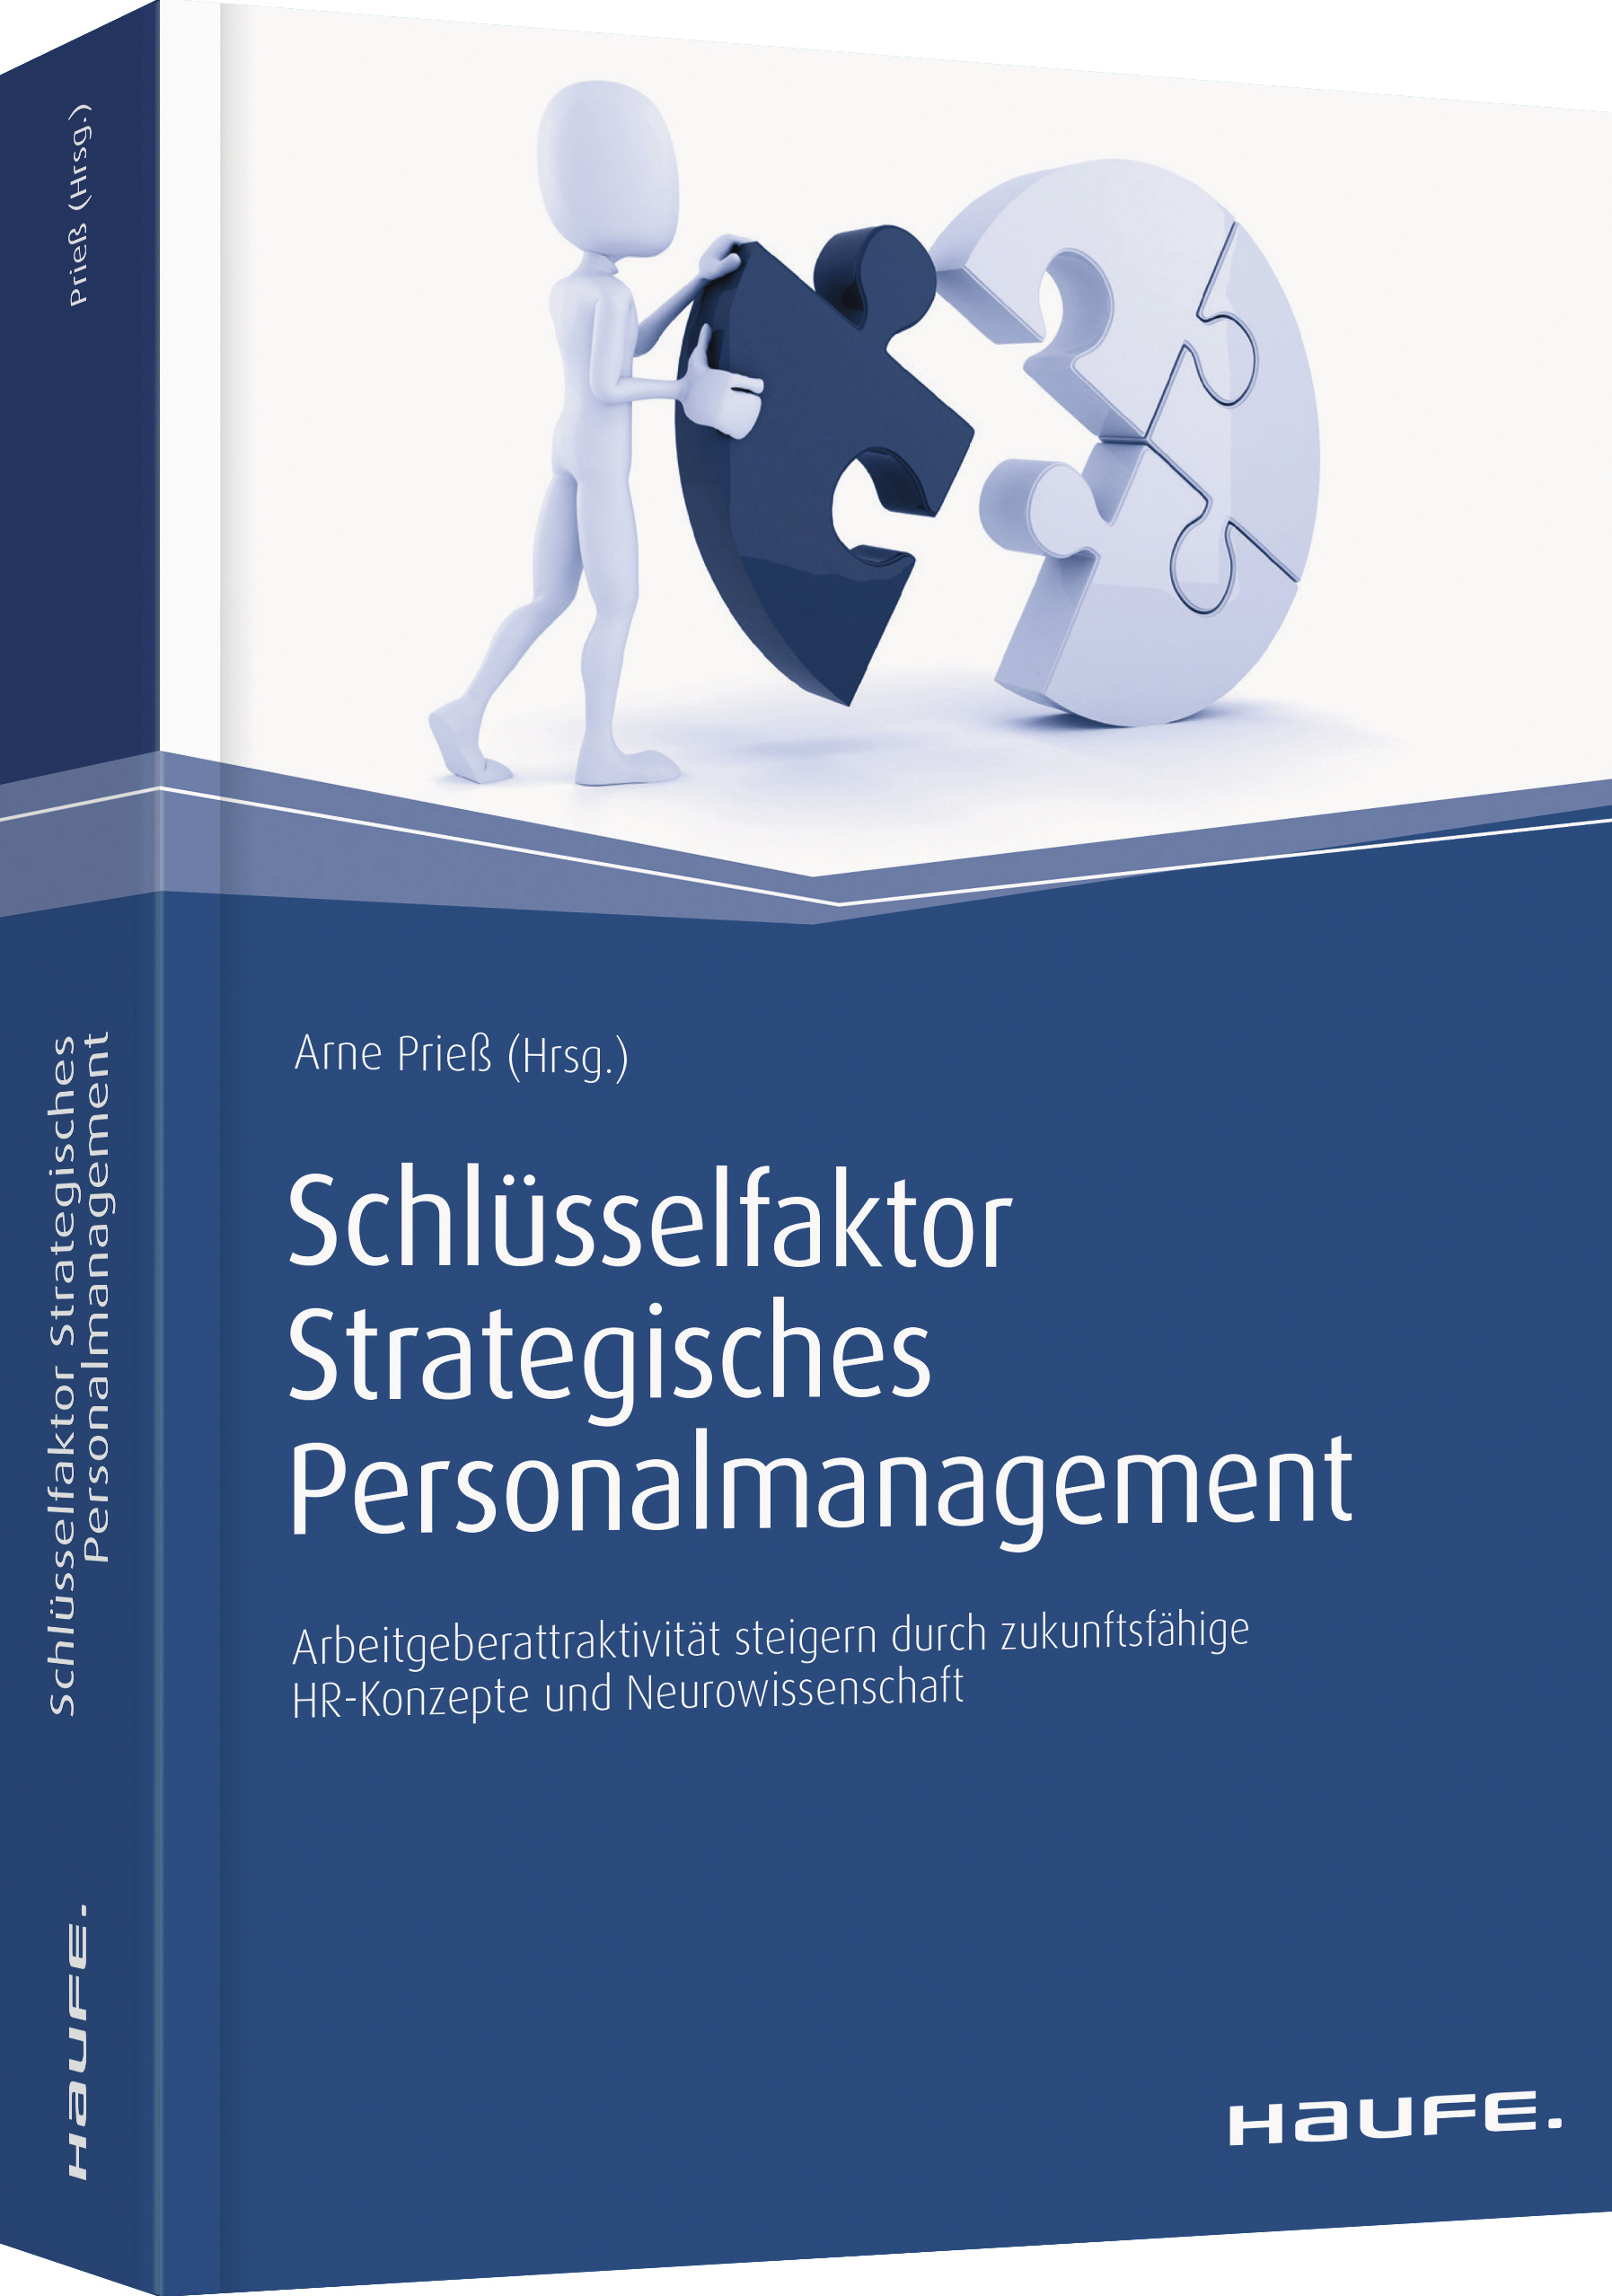 Schlüsselfaktor Strategisches Personalmanagement – HR Strategie und Neuro-Wissenschaft im Einklang